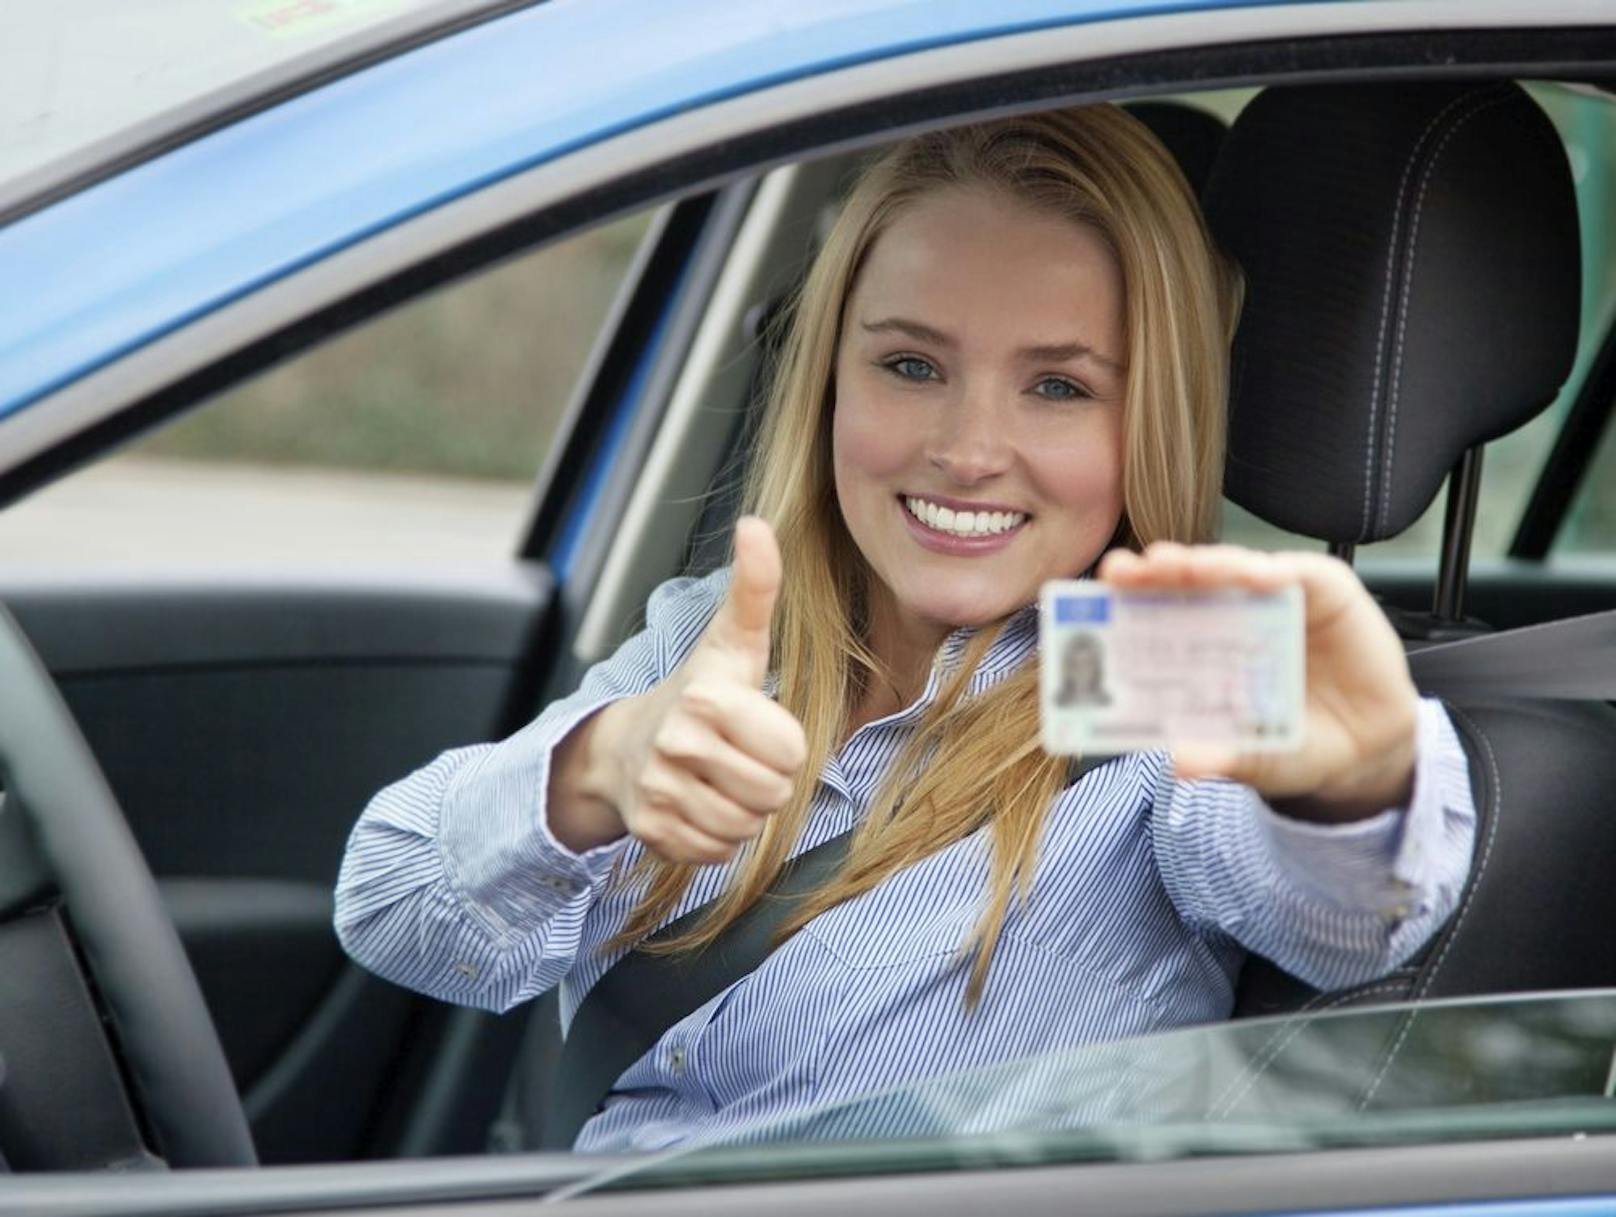 Führerscheine enthalten manchmal Codes - und die haben oft einen kuriosen Inhalt.